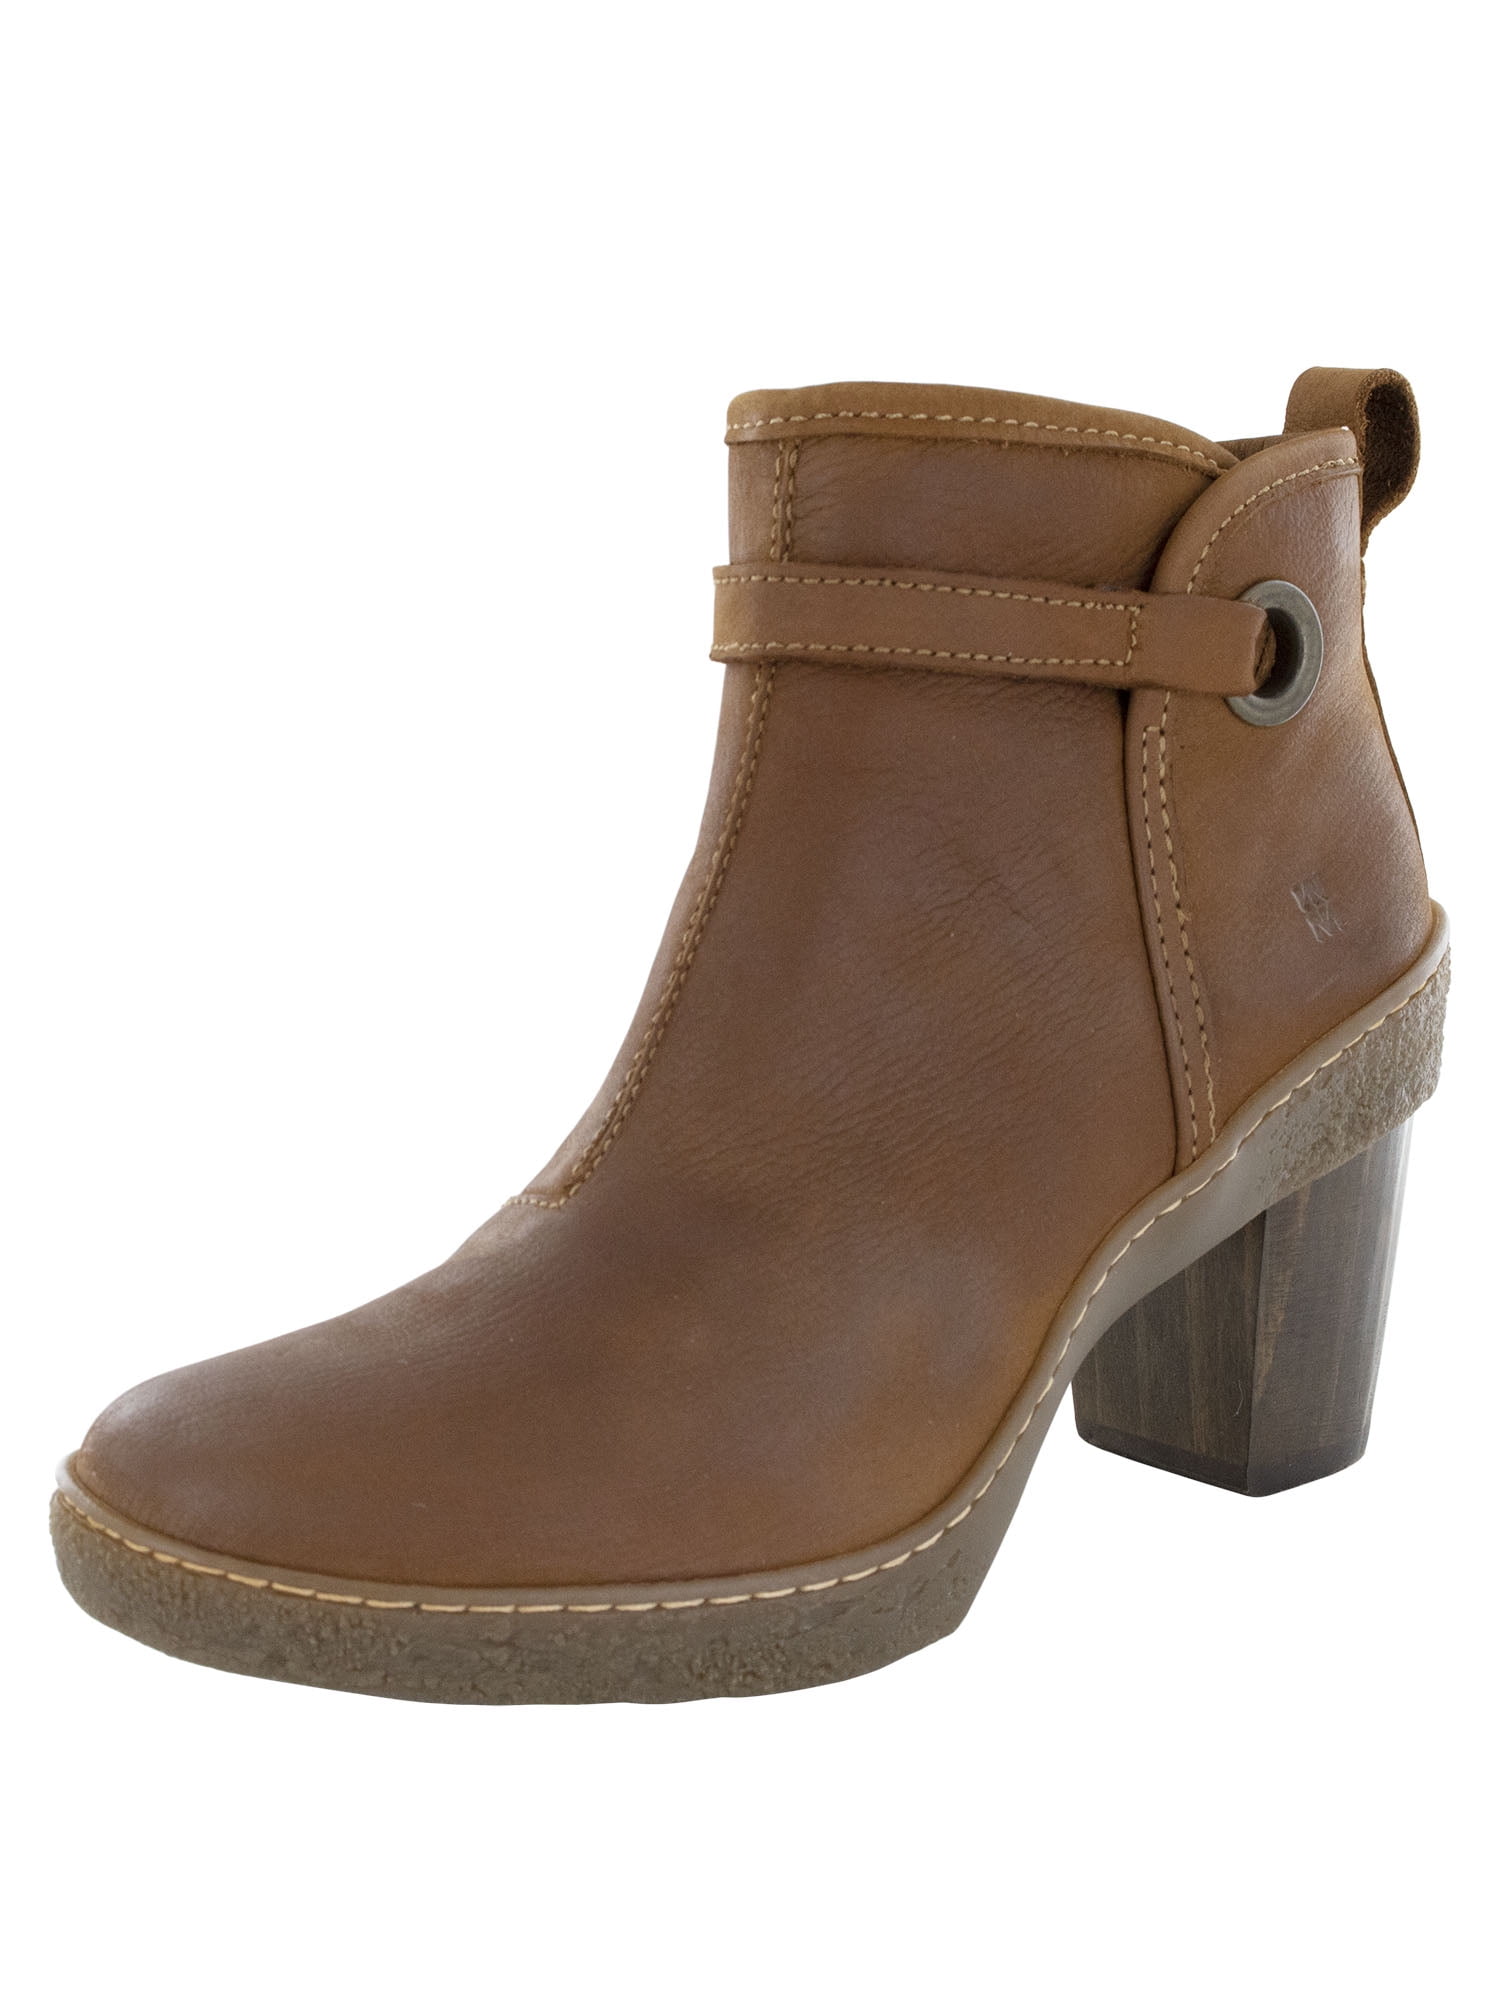 Ik heb het erkend Dankbaar spiegel El Naturalista Womens NF71 Lichen Heeled Ankle Boots, Wood, EU 42 / US 11 -  Walmart.com